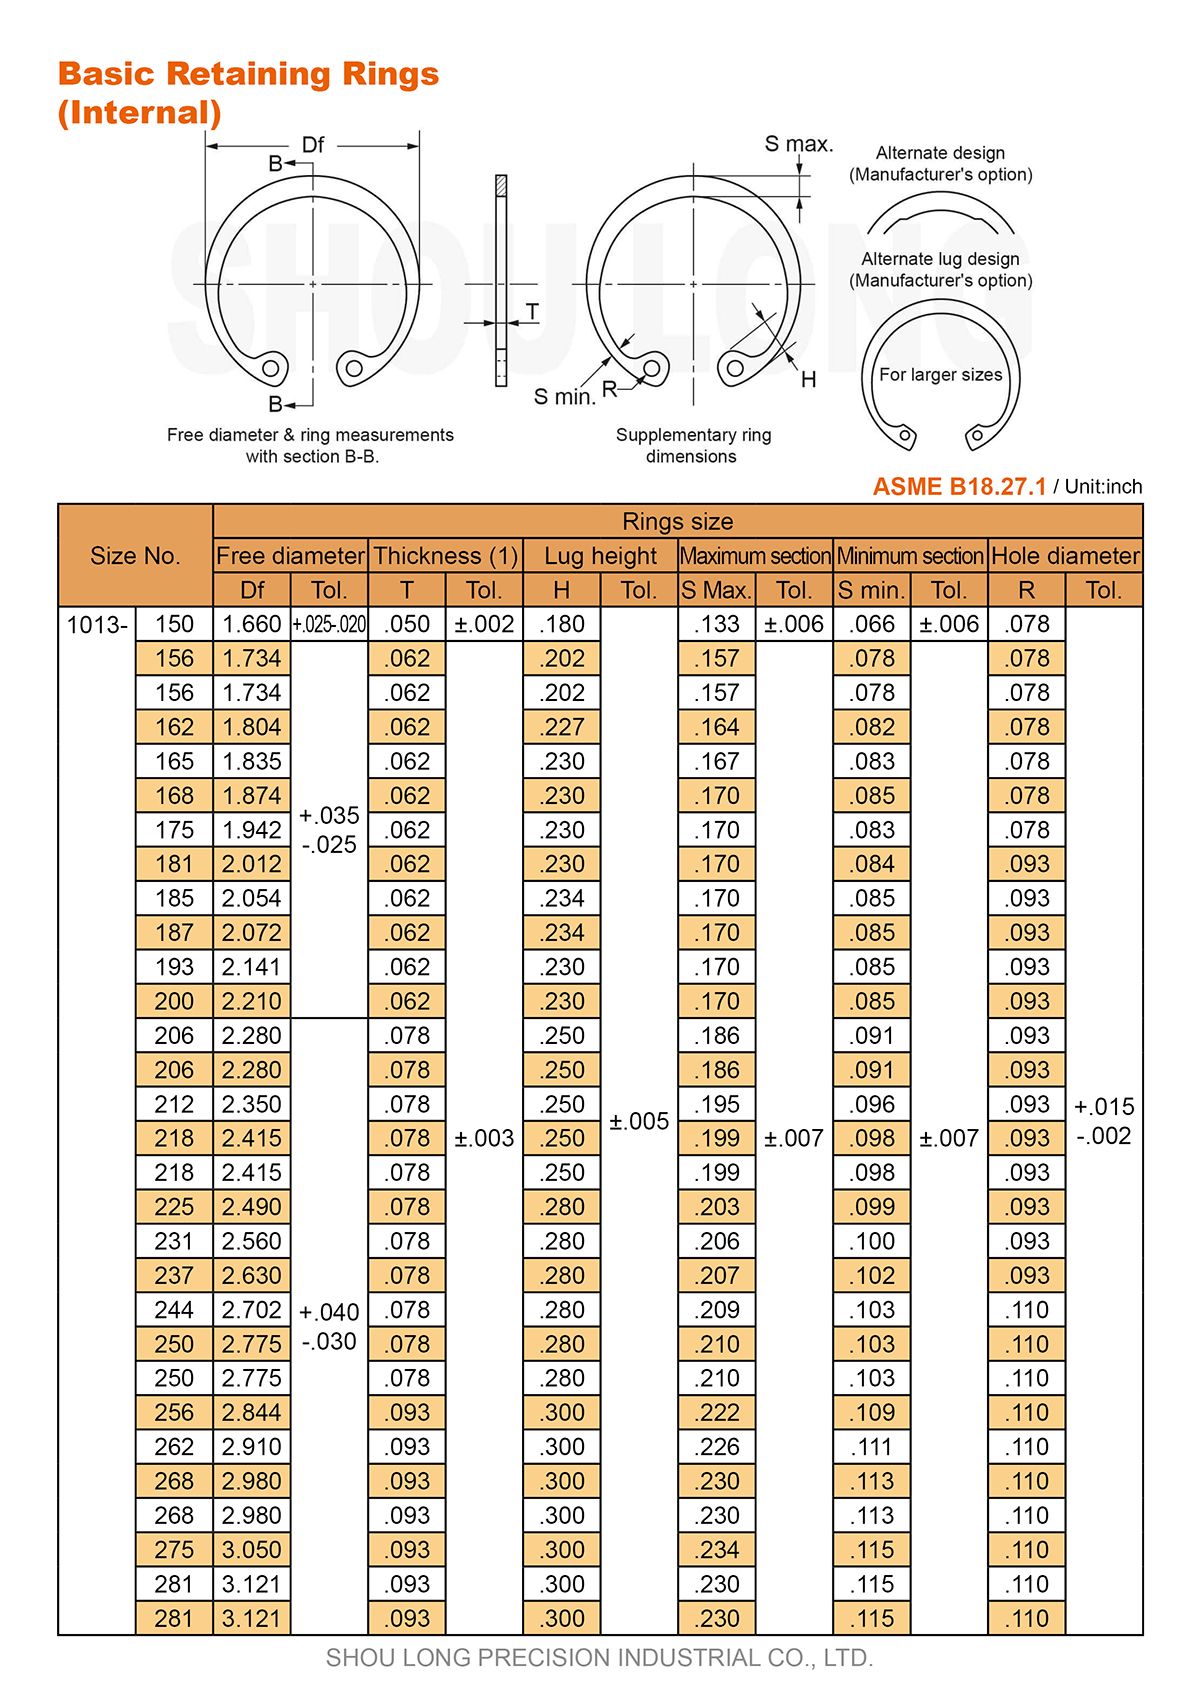 Especificación de Anillos de Retención Básicos en Pulgadas para Agujeros ASME/ANSI B18.27.1-2